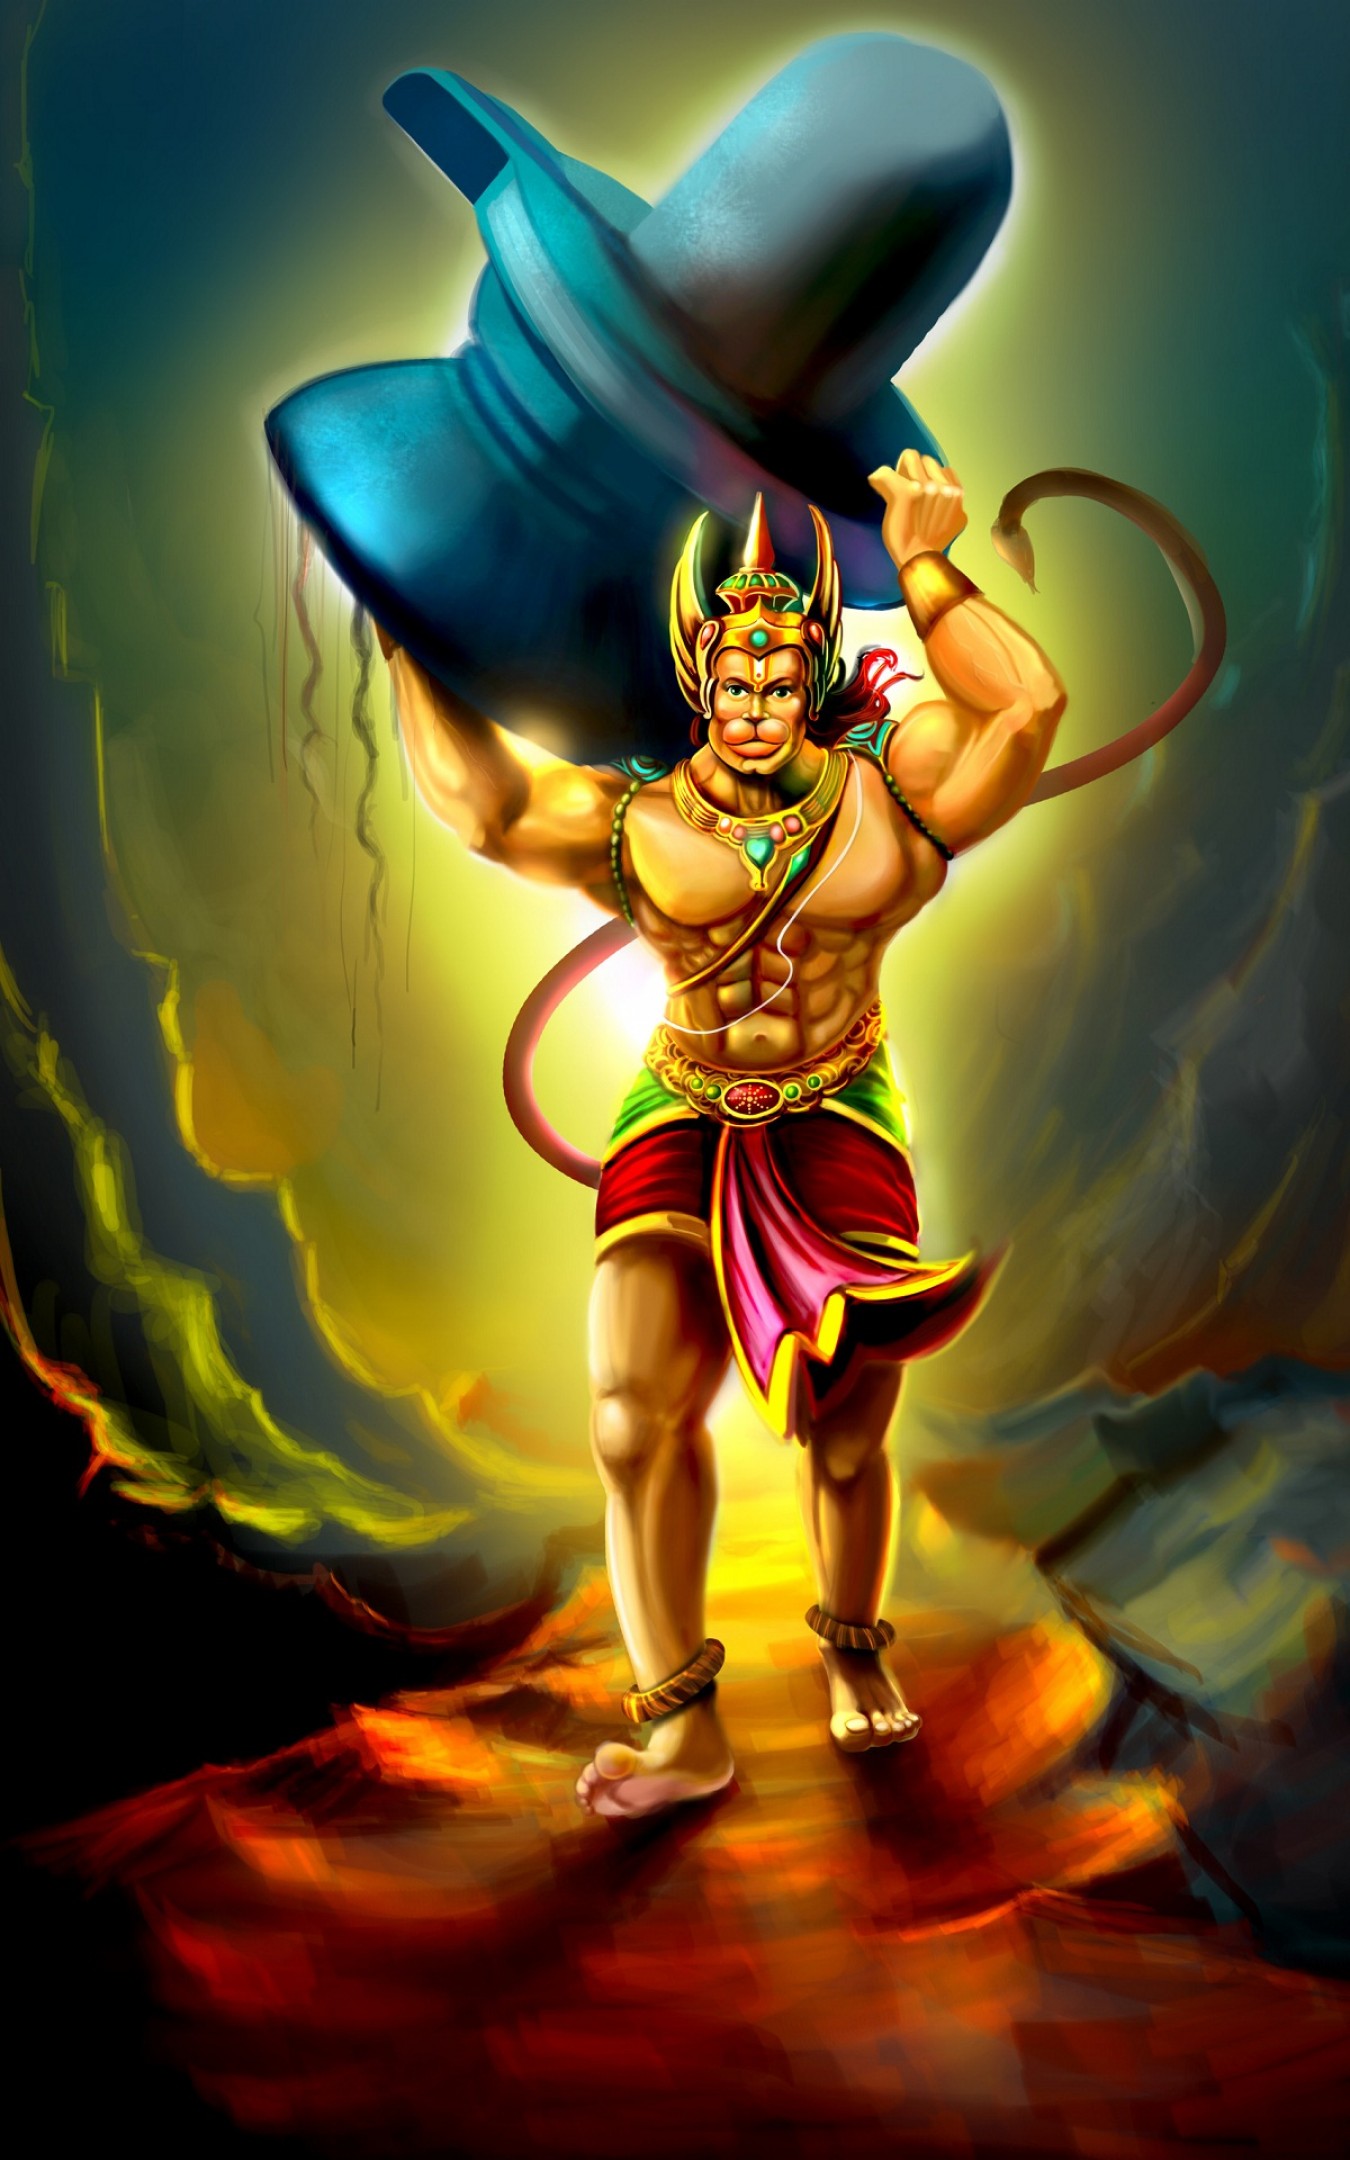 Lord Hanuman - HD Wallpaper 